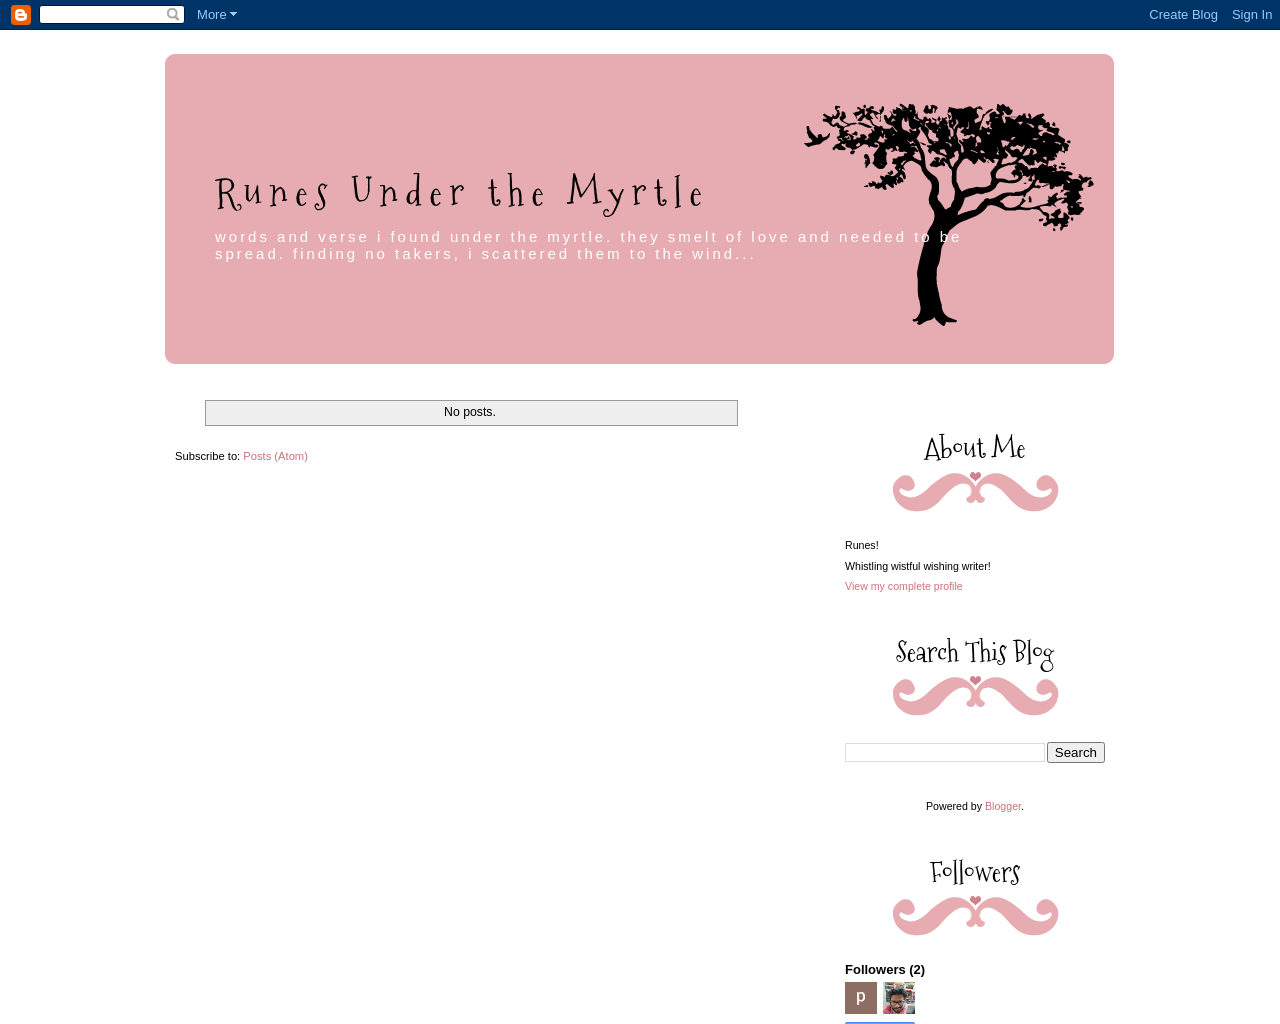 Runes Under the Myrtle